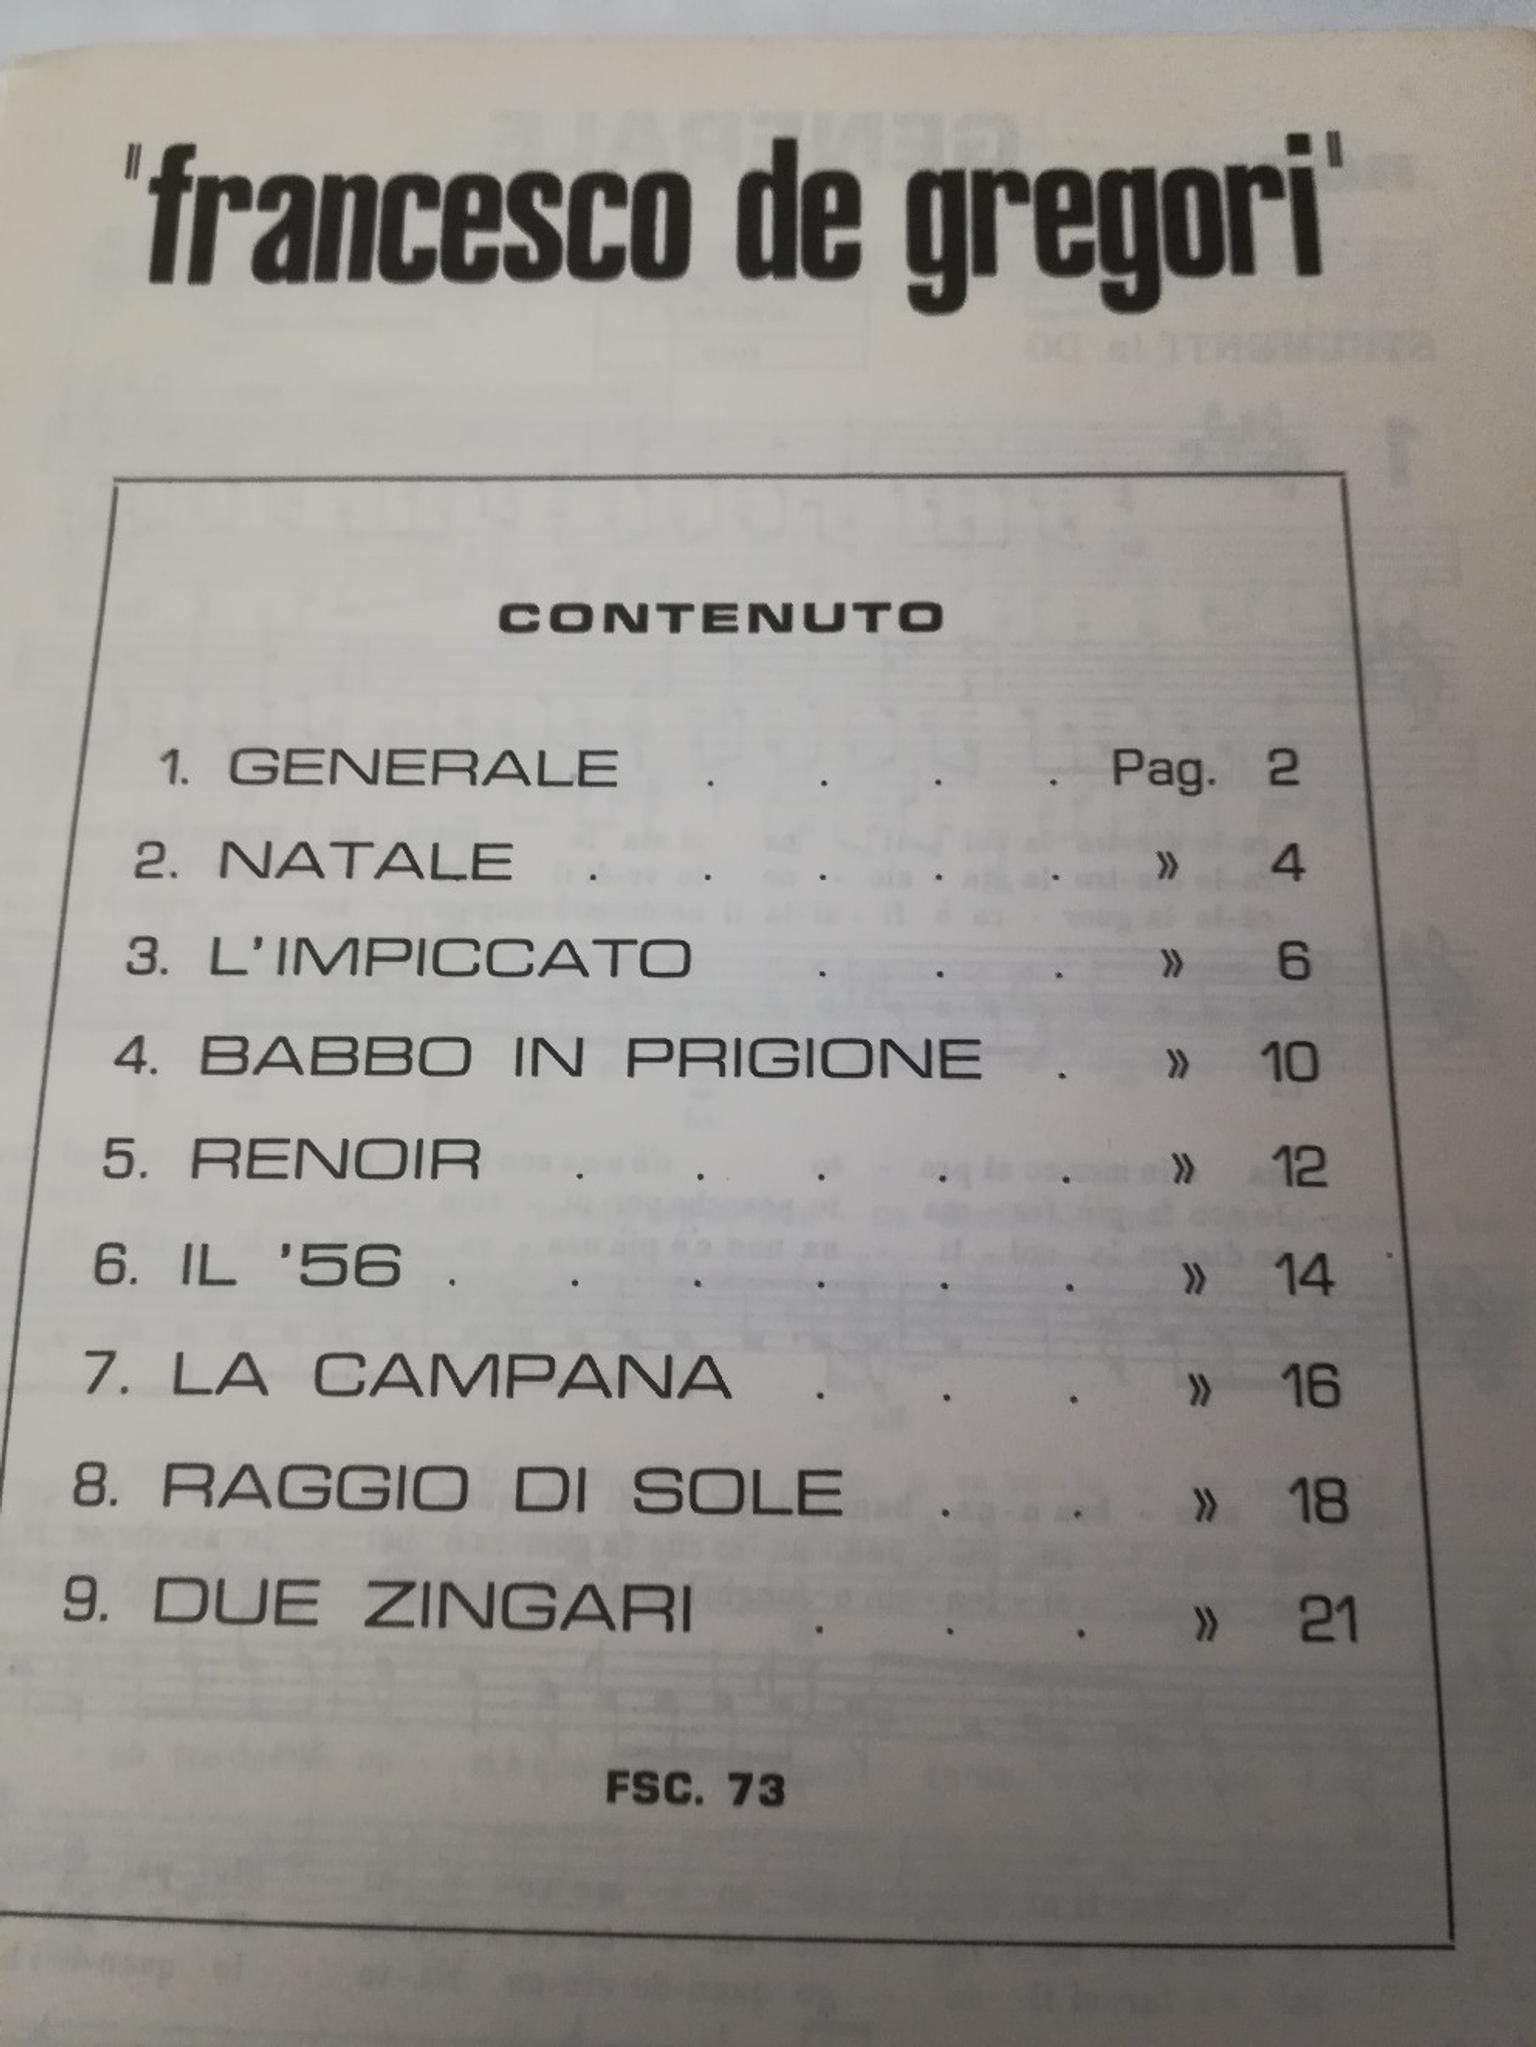 De Gregori Natale.Libretto Spartiti Francesco De Gregori In 70123 Bari For 3 00 For Sale Shpock